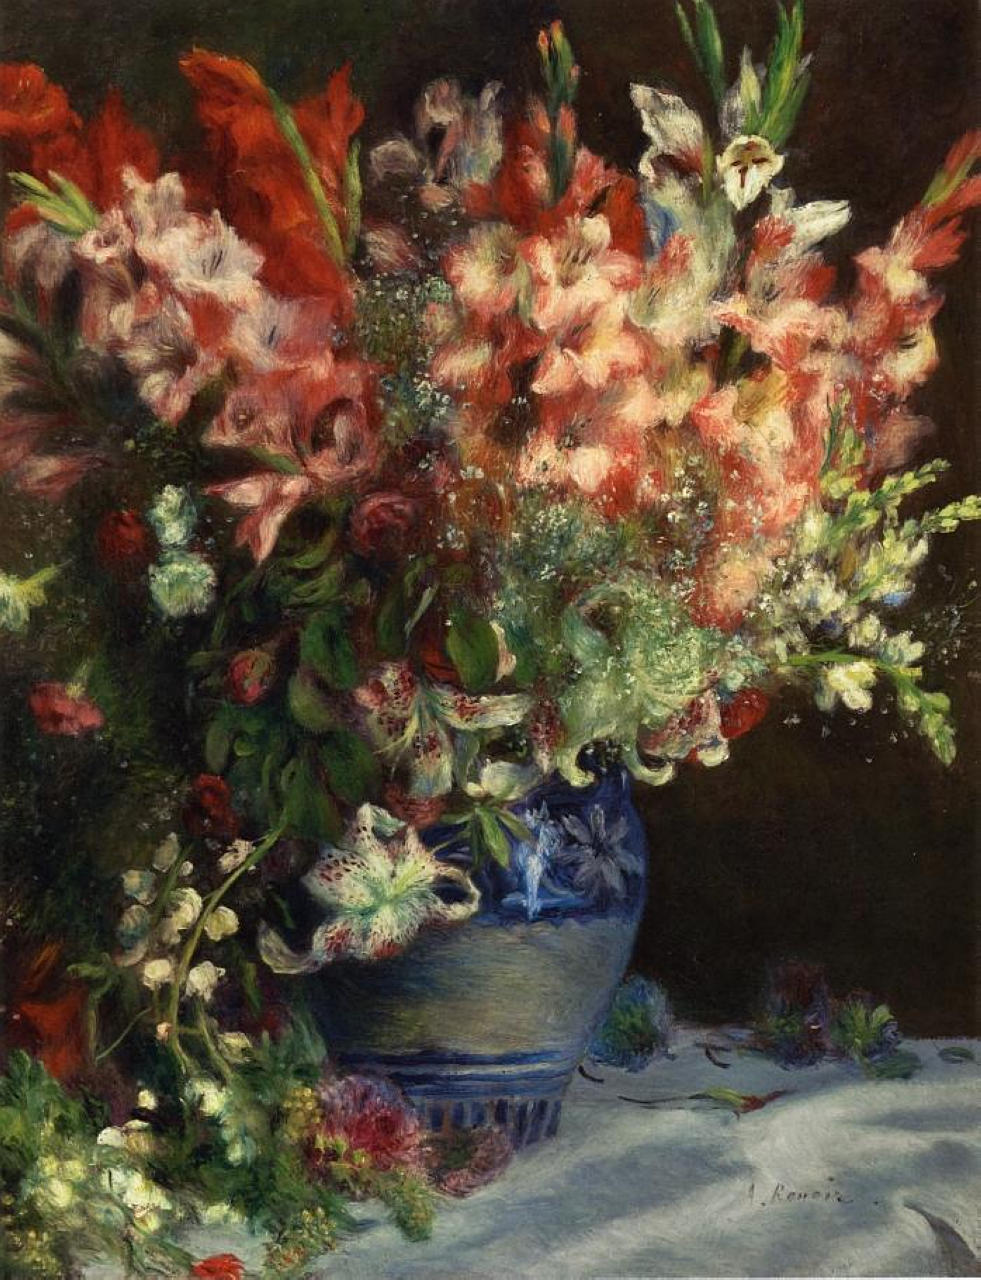 Pierre+Auguste+Renoir-1841-1-19 (497).jpg